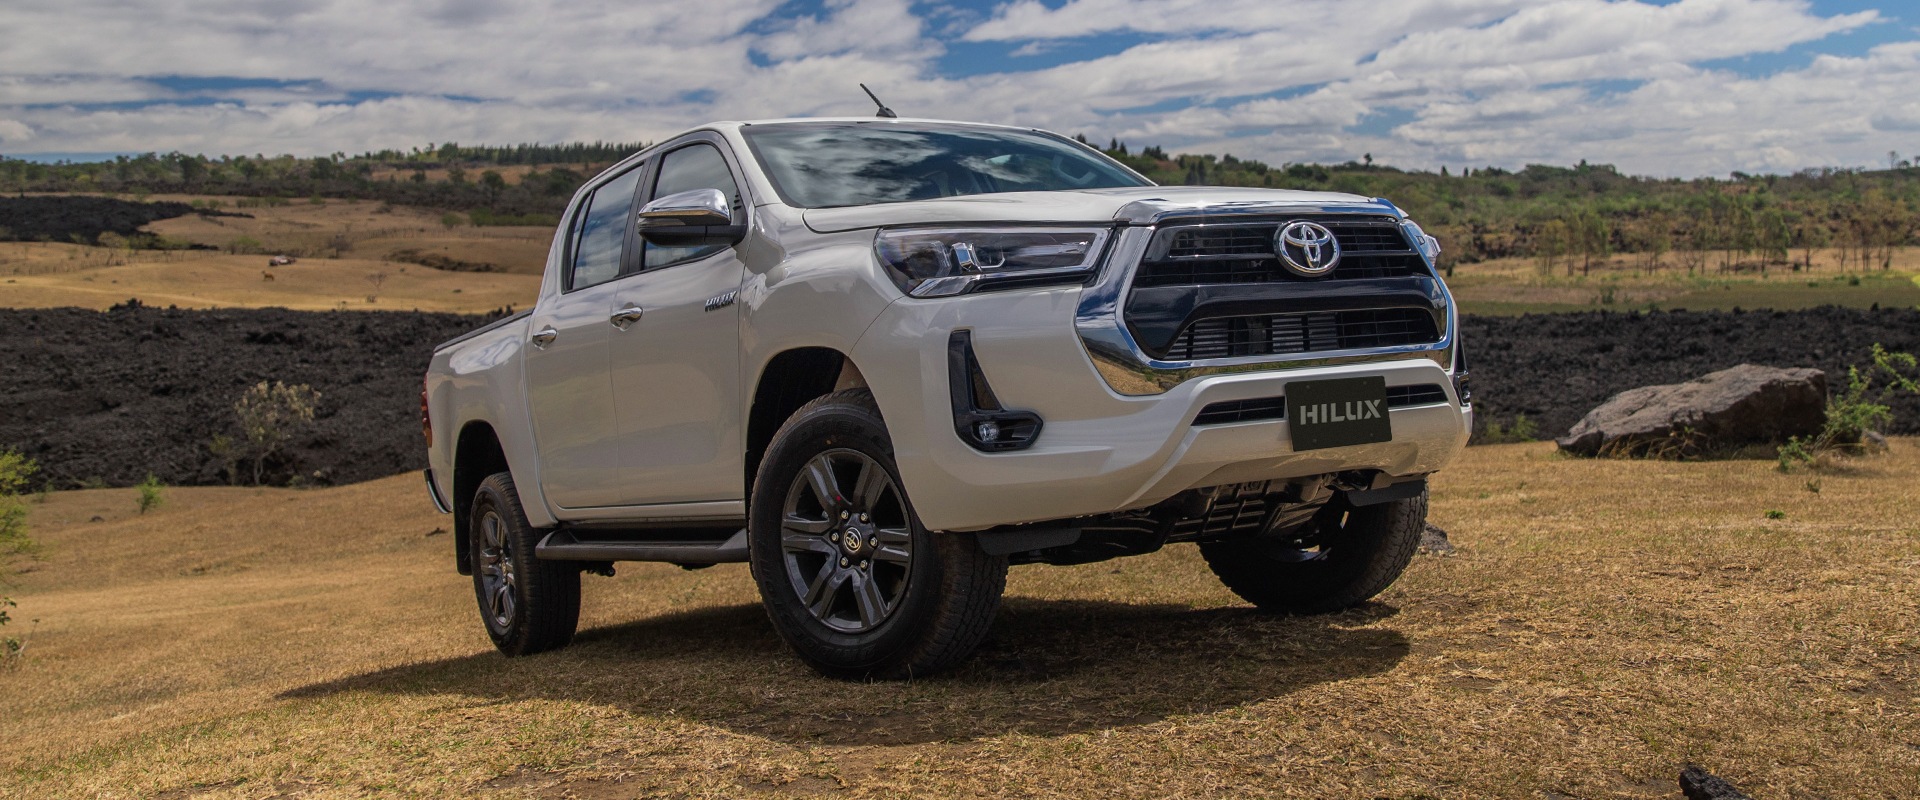 Toyota Hilux 2021: Características, fotos e información